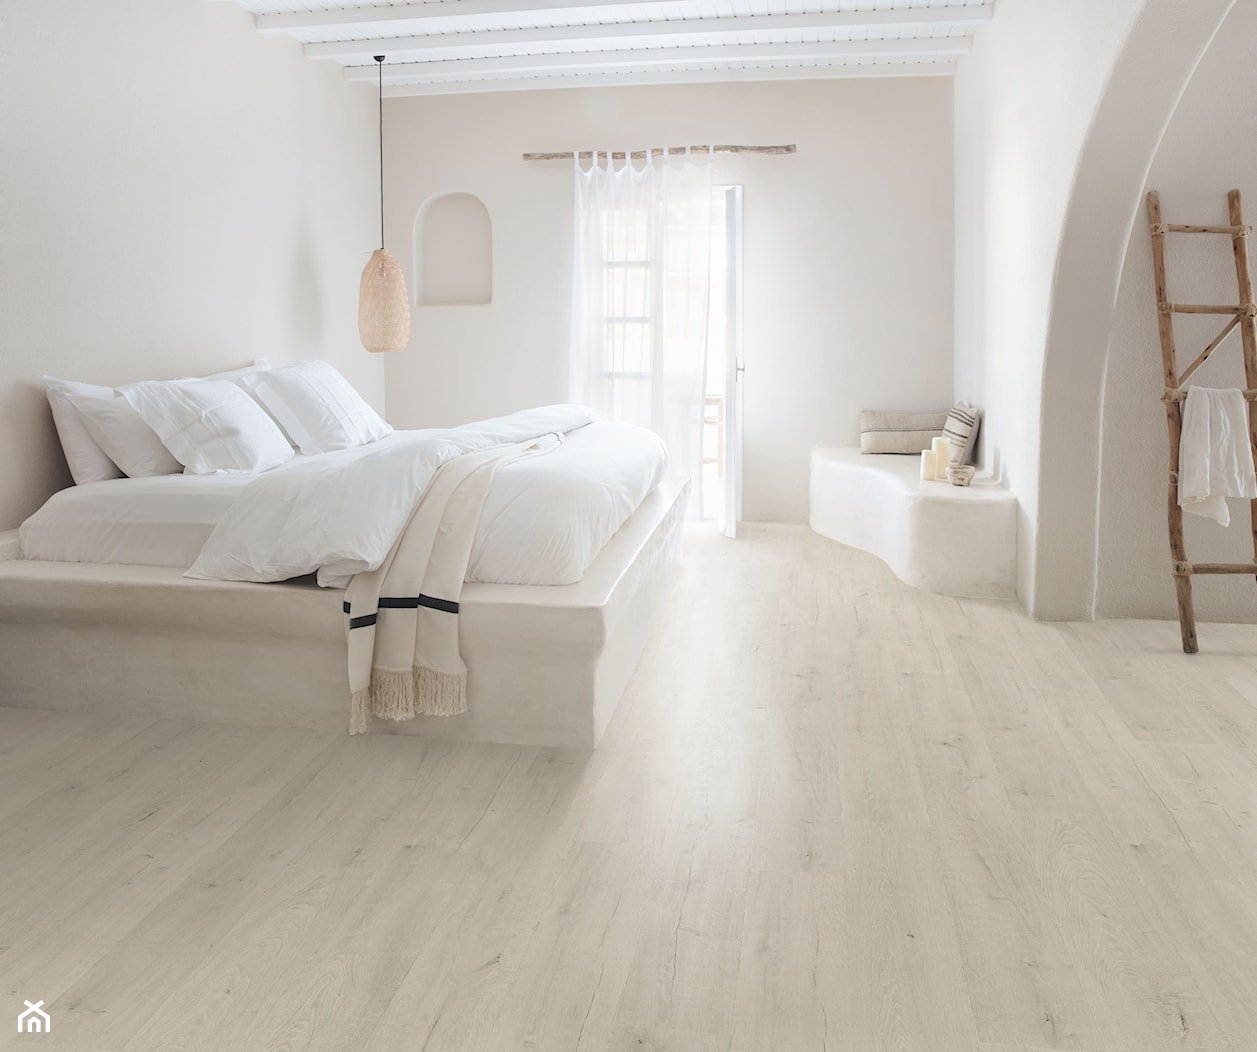 Podłoga laminowana Signature - Sypialnia, styl minimalistyczny - zdjęcie od Quick Step - Homebook